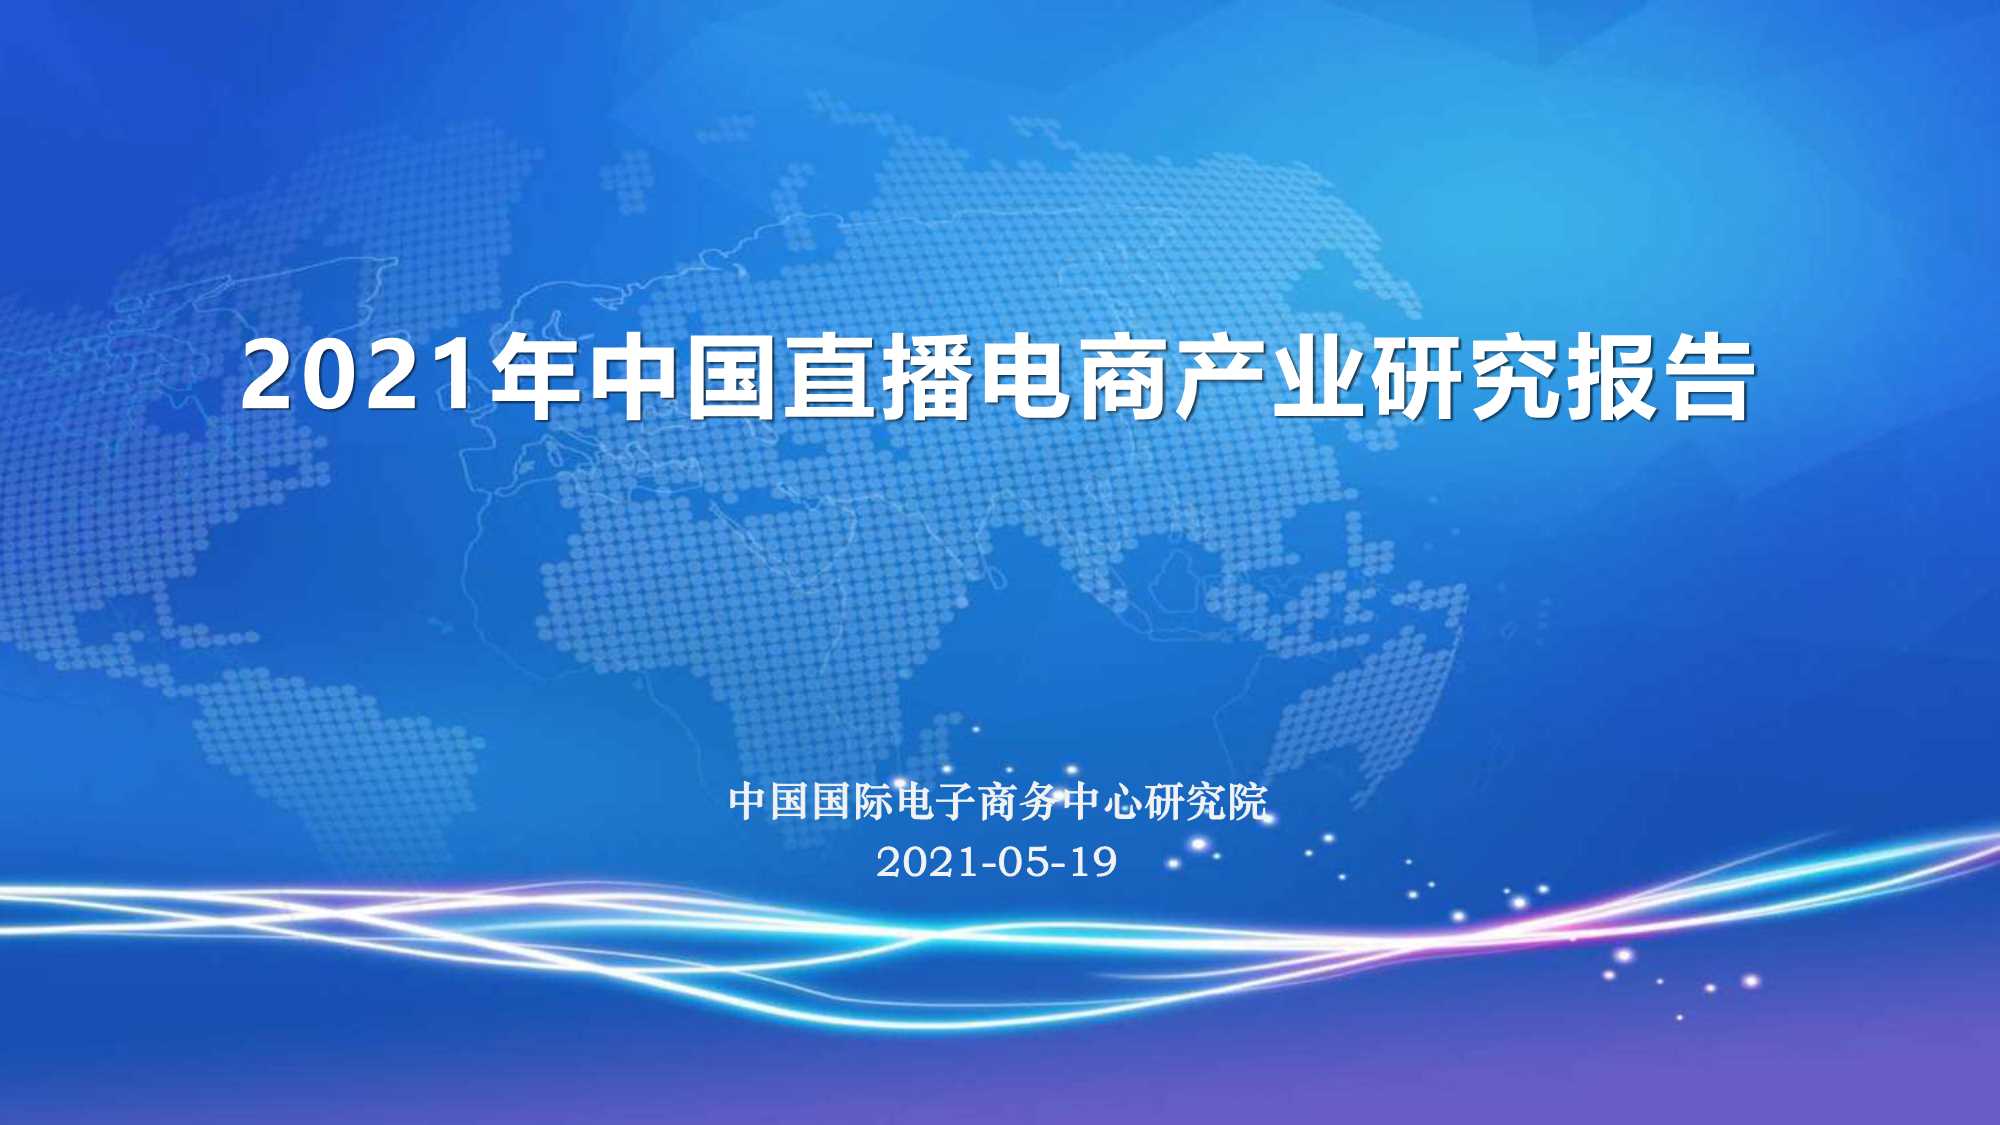 CIECC-2021年中国直播电商产业研究报告-2021.05-29页